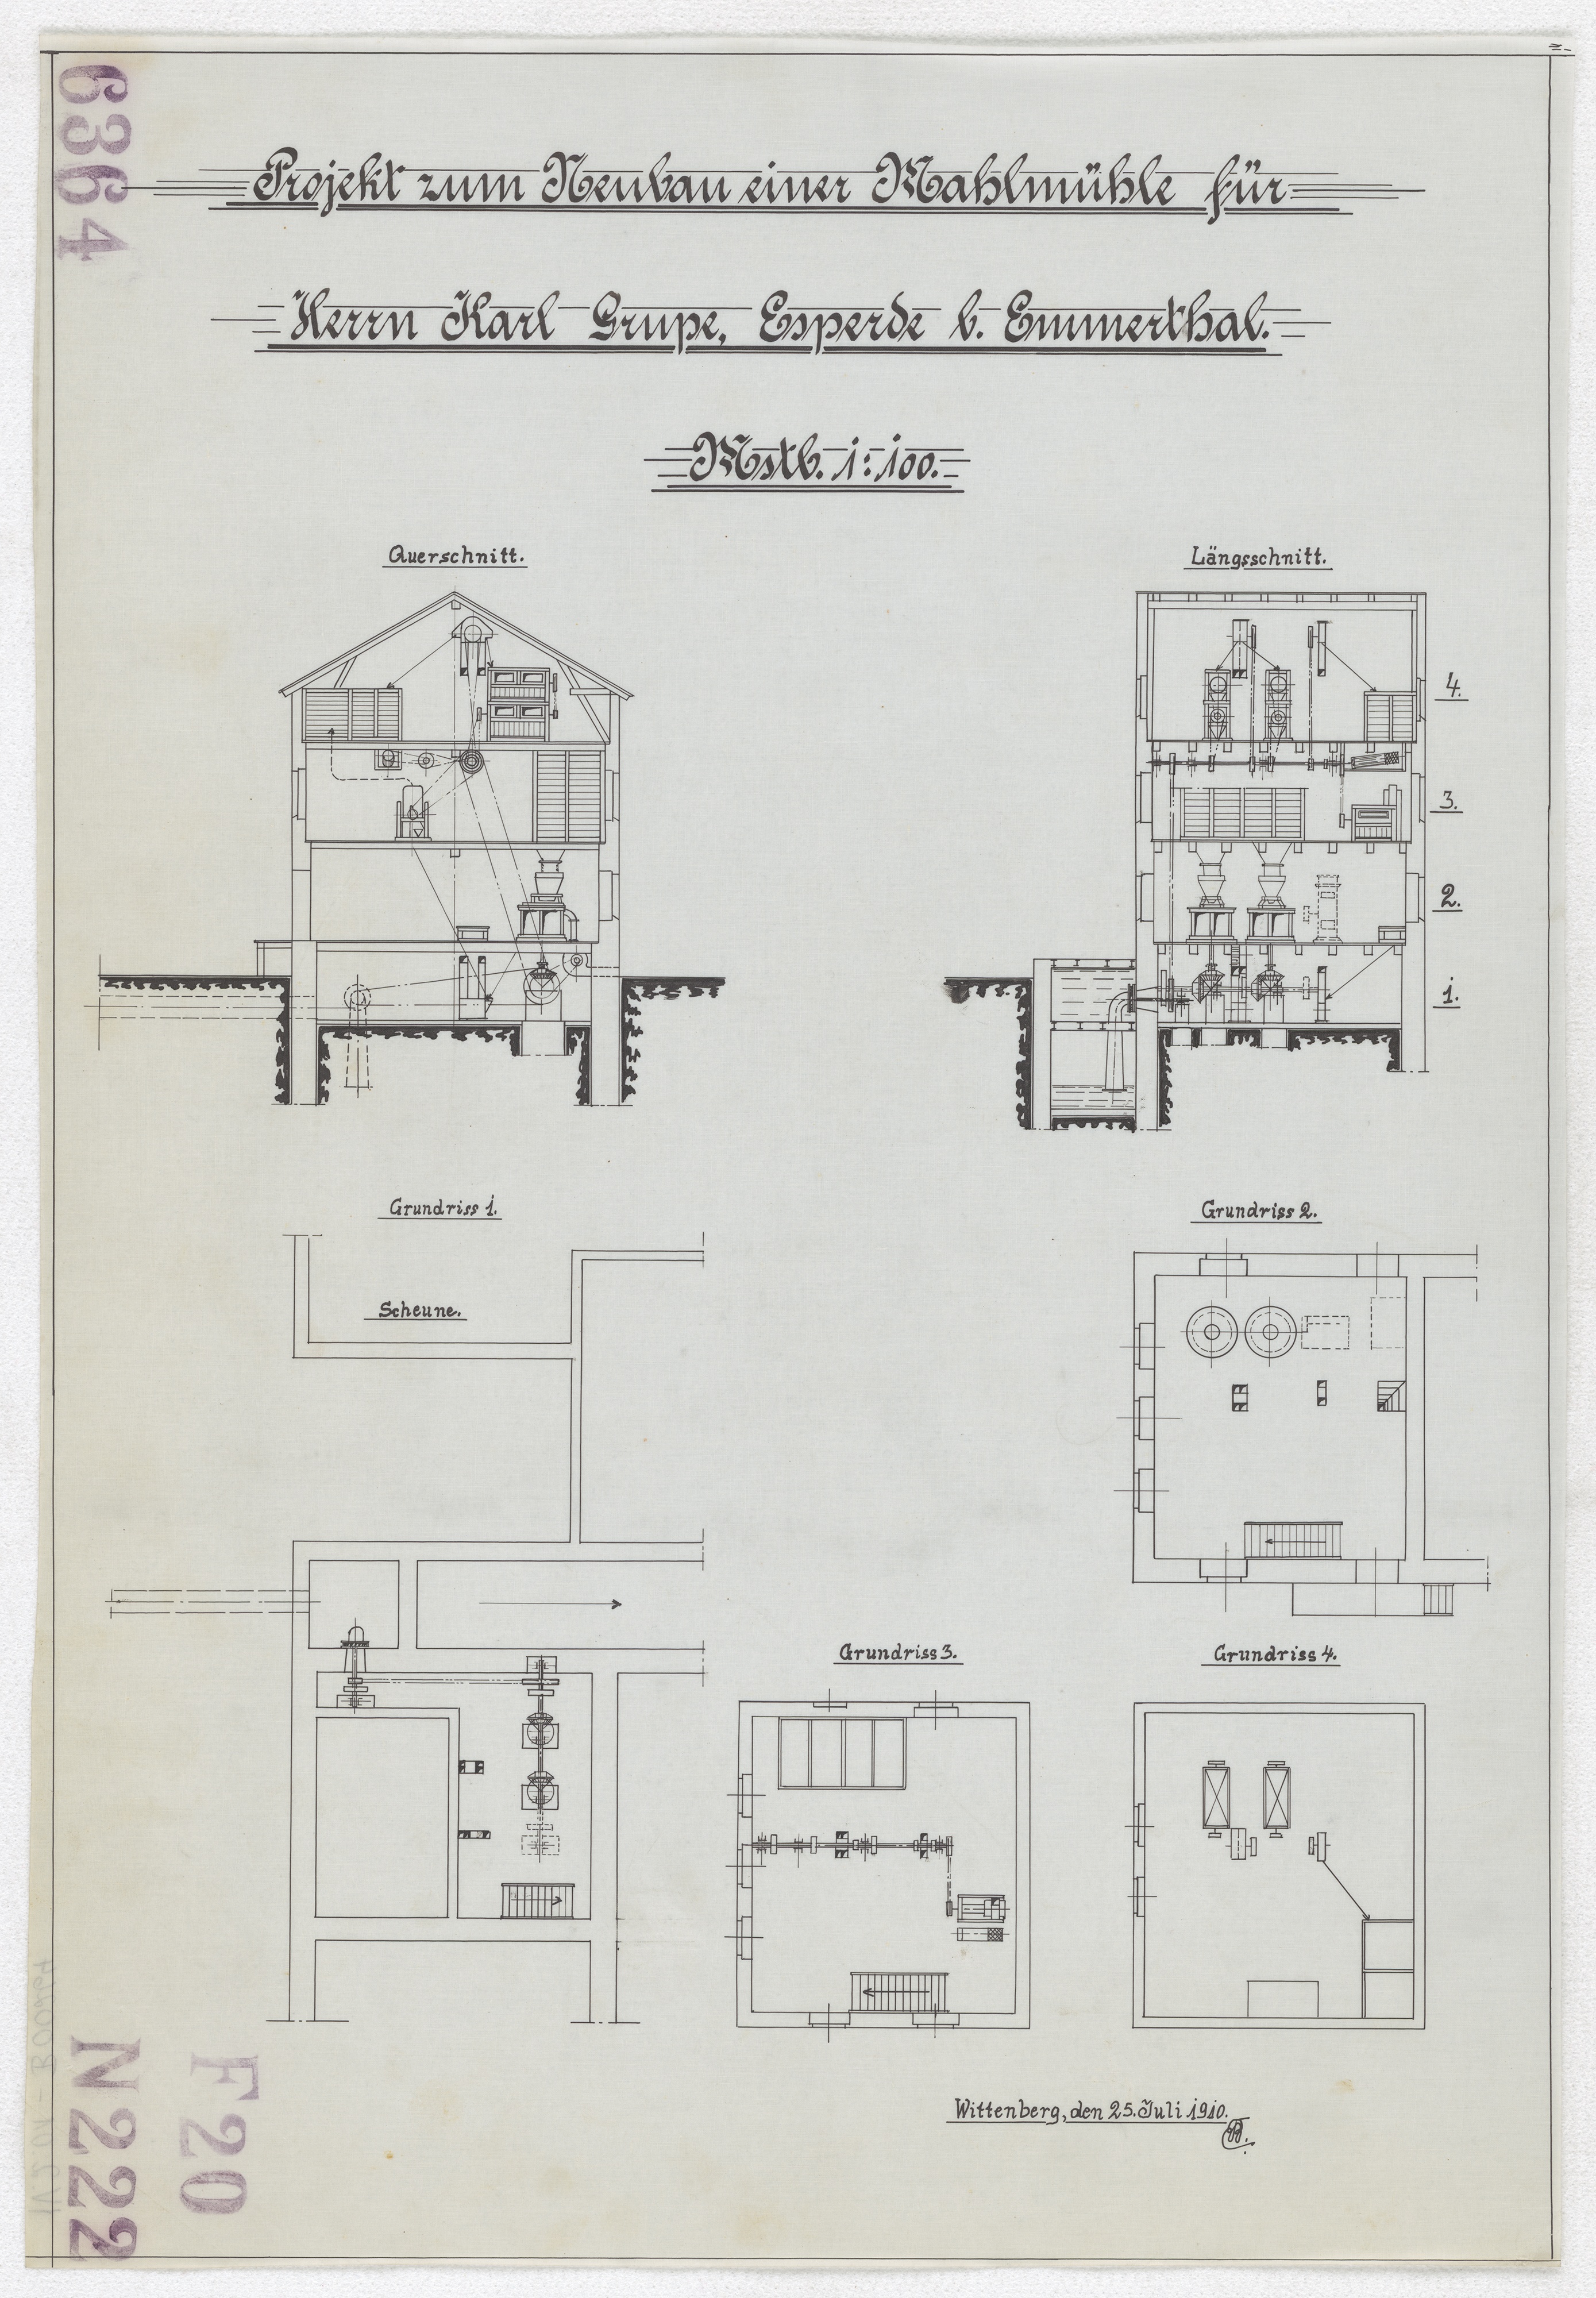 Technische Zeichnung : Projekt zum Neubau einer Mahlmühle für Herrn Karl Grupe, Esperde bei Emmerthal (Stiftung Deutsches Technikmuseum Berlin CC BY-SA)